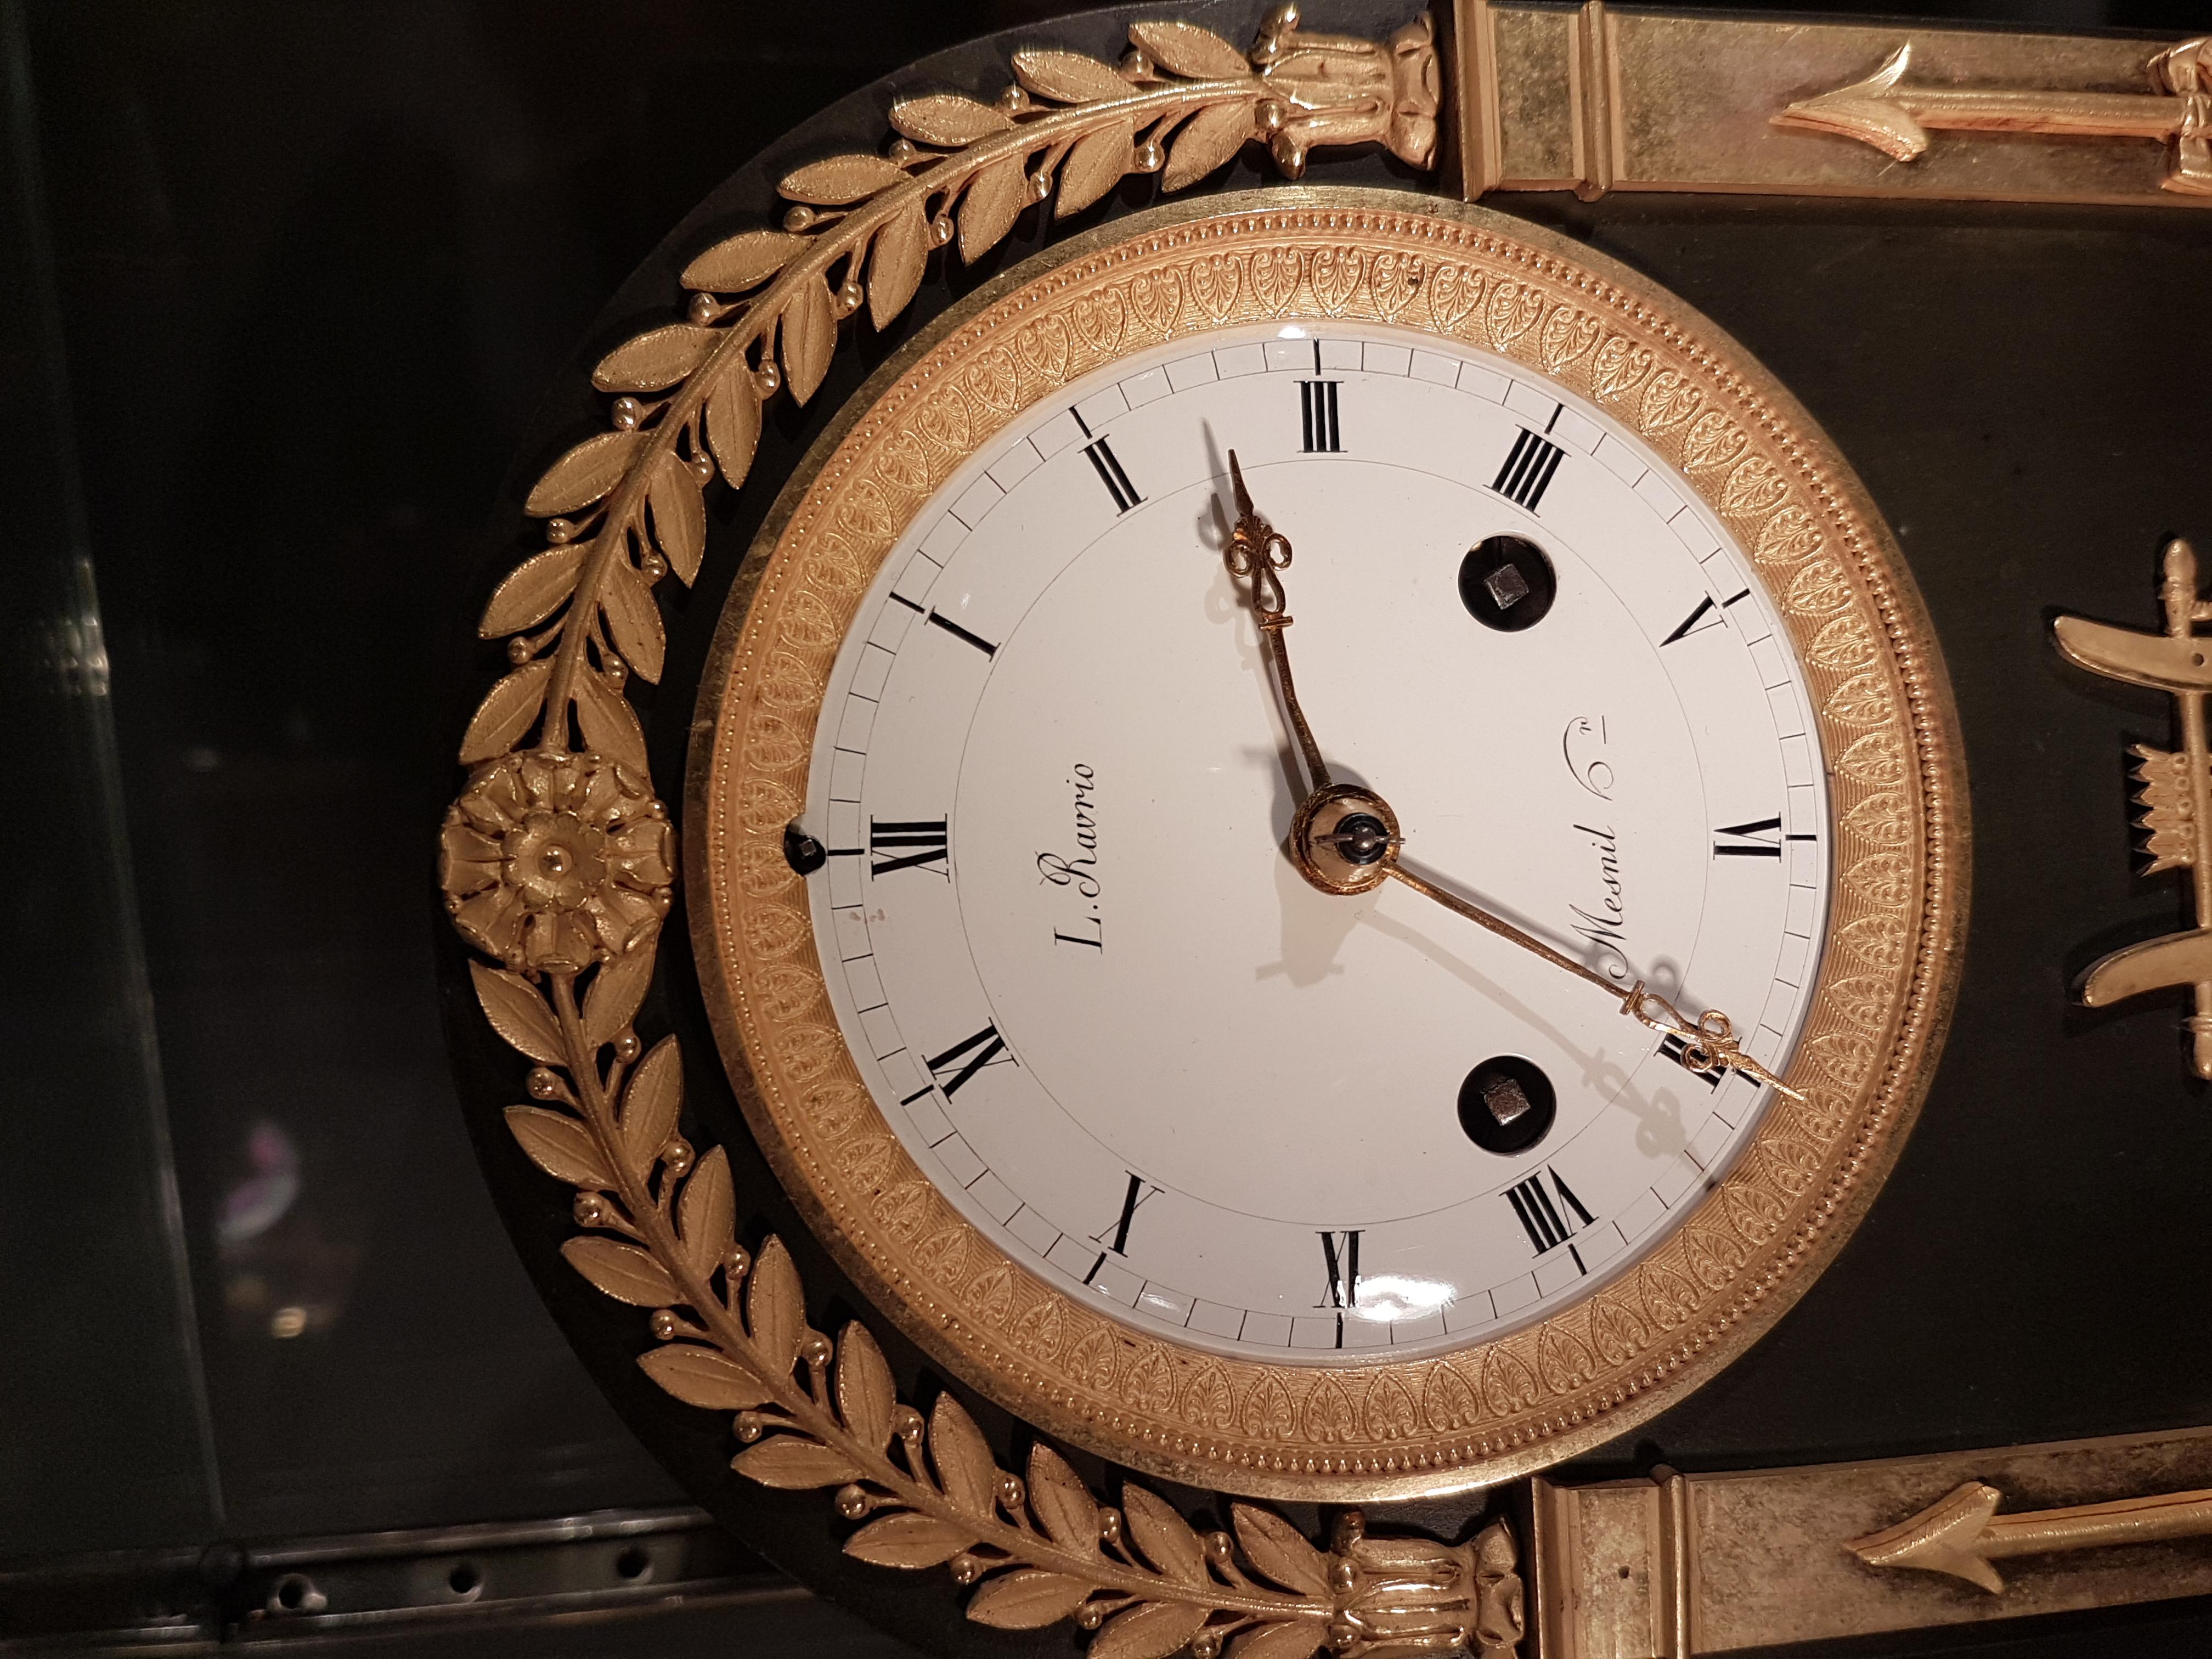 Französische Empire-Uhr von hervorragender Qualität in getragener Form aus rougefarbenem Marmor, original feuervergoldetem Ormolu und patinierter Bronze. Das Zifferblatt der Uhr ist unter 12 Uhr mit 